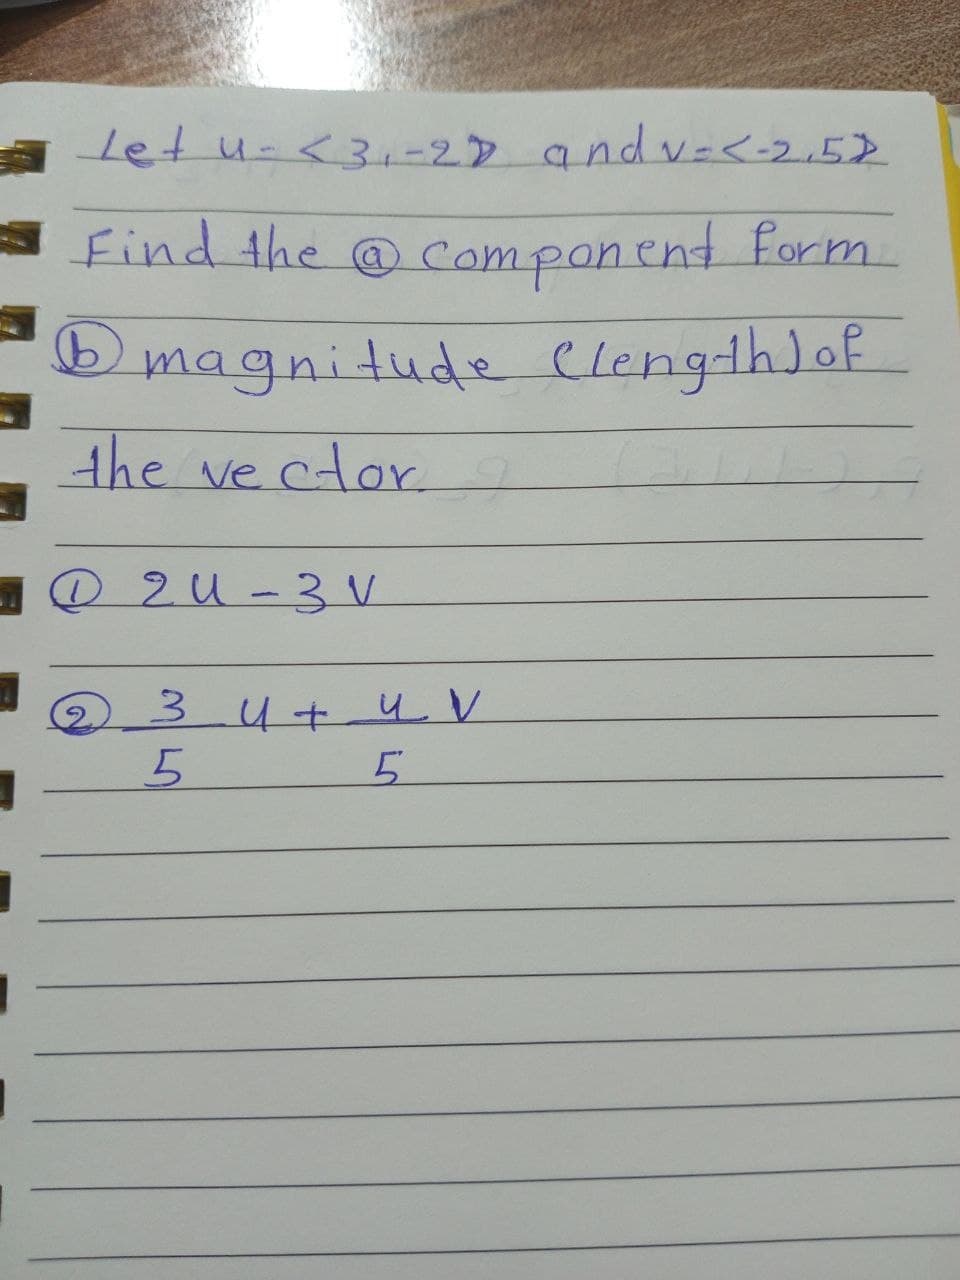 Let u <3₁-2D andv=< -2.52
Find the component form.
1 magnitude Clength) of
the vector.
2U-3 V
3 u + u V
5
5